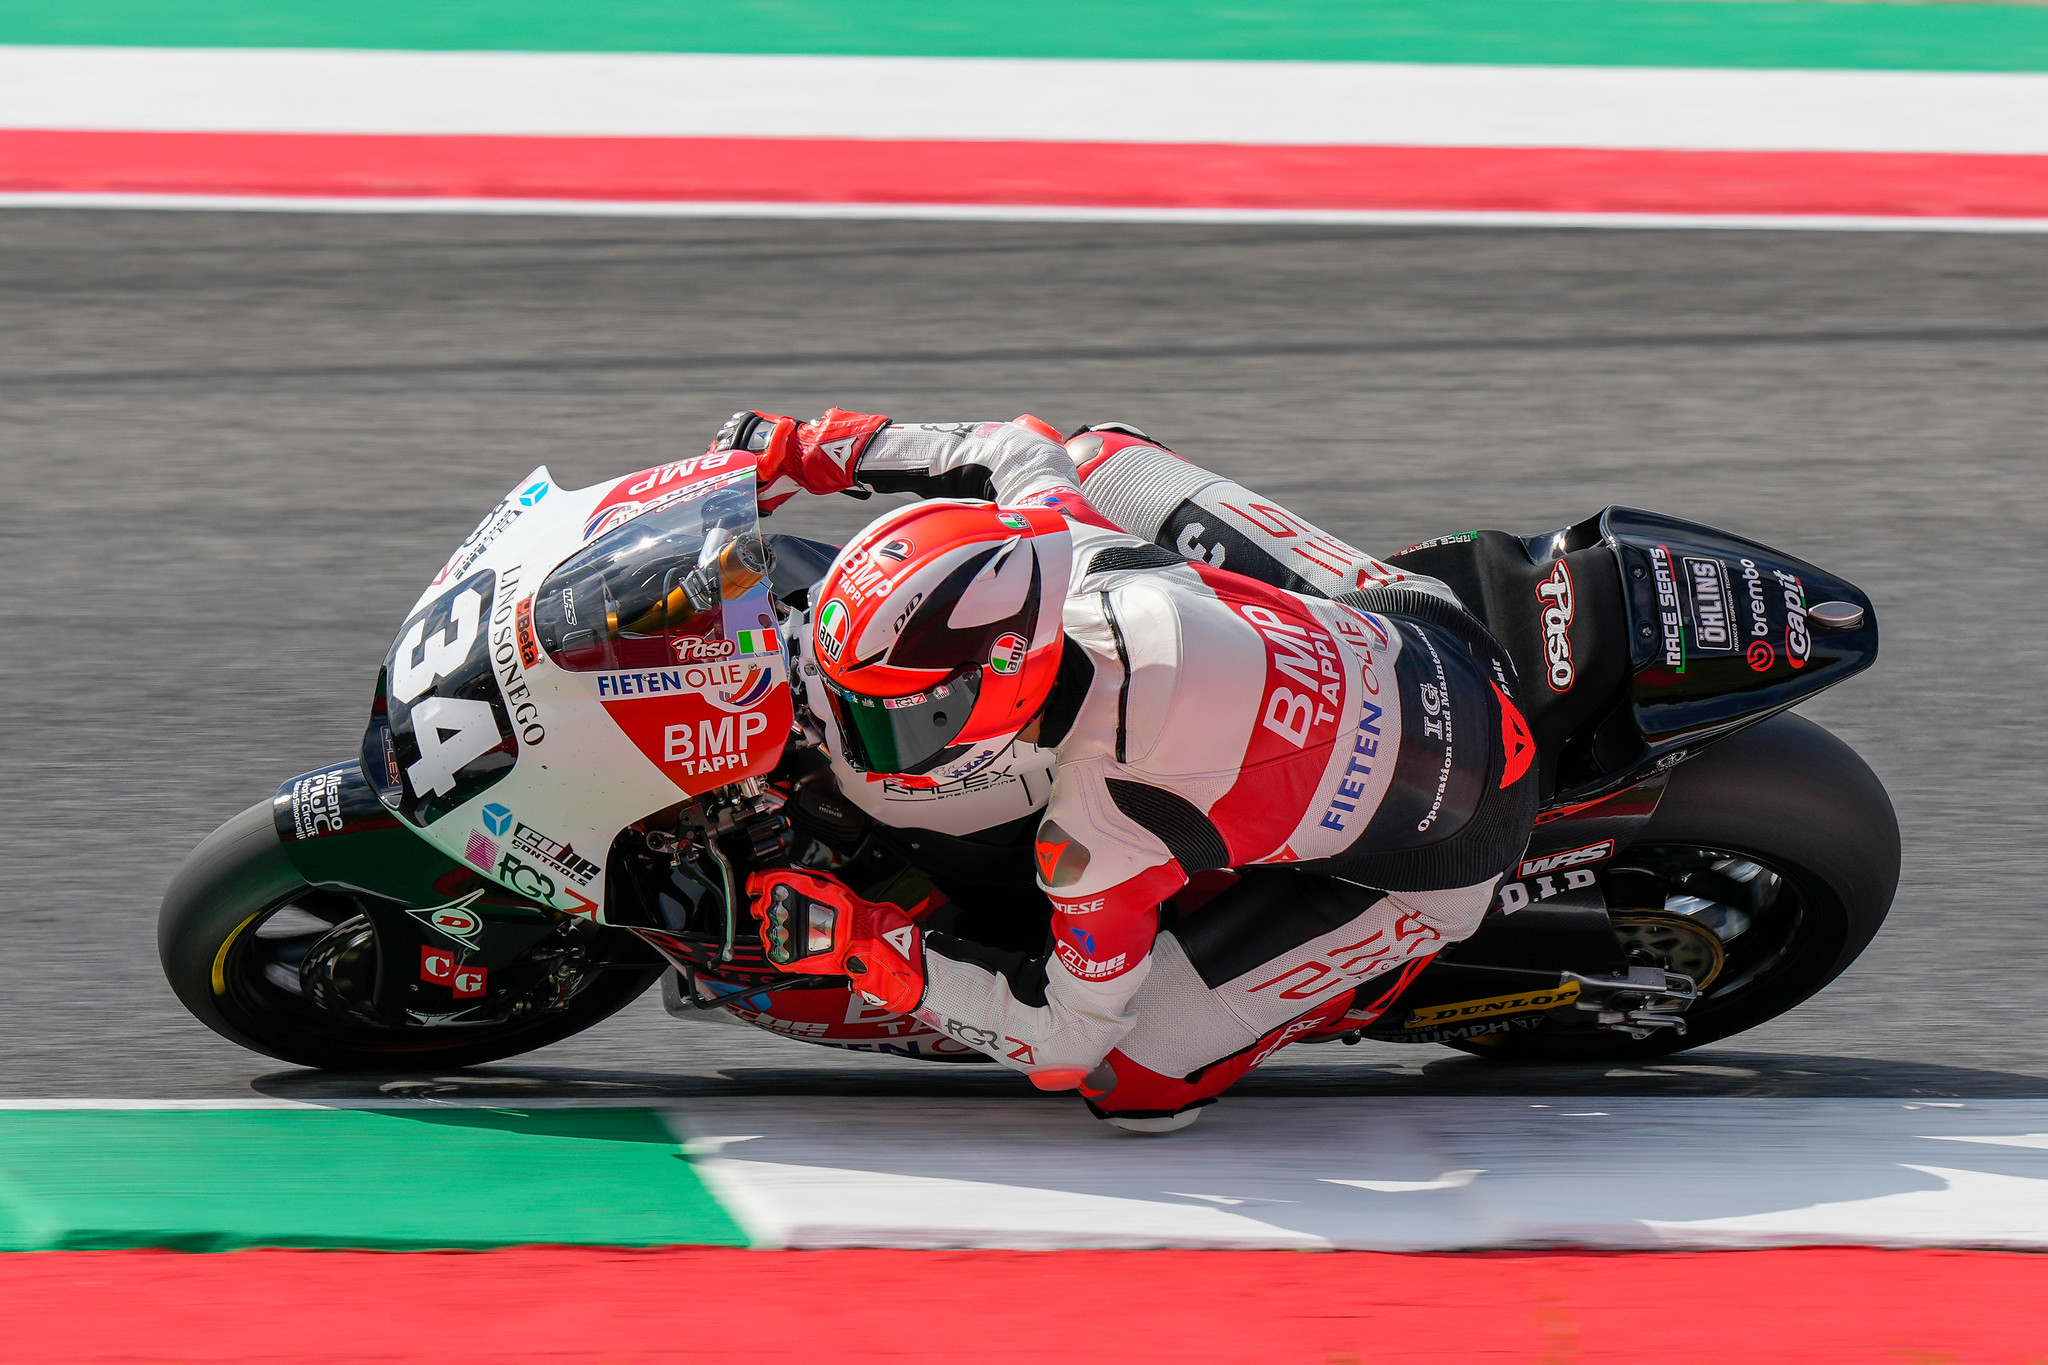 #34 Mattia Pasini - (ITA) - Fieten Olie Racing GP - Kalex